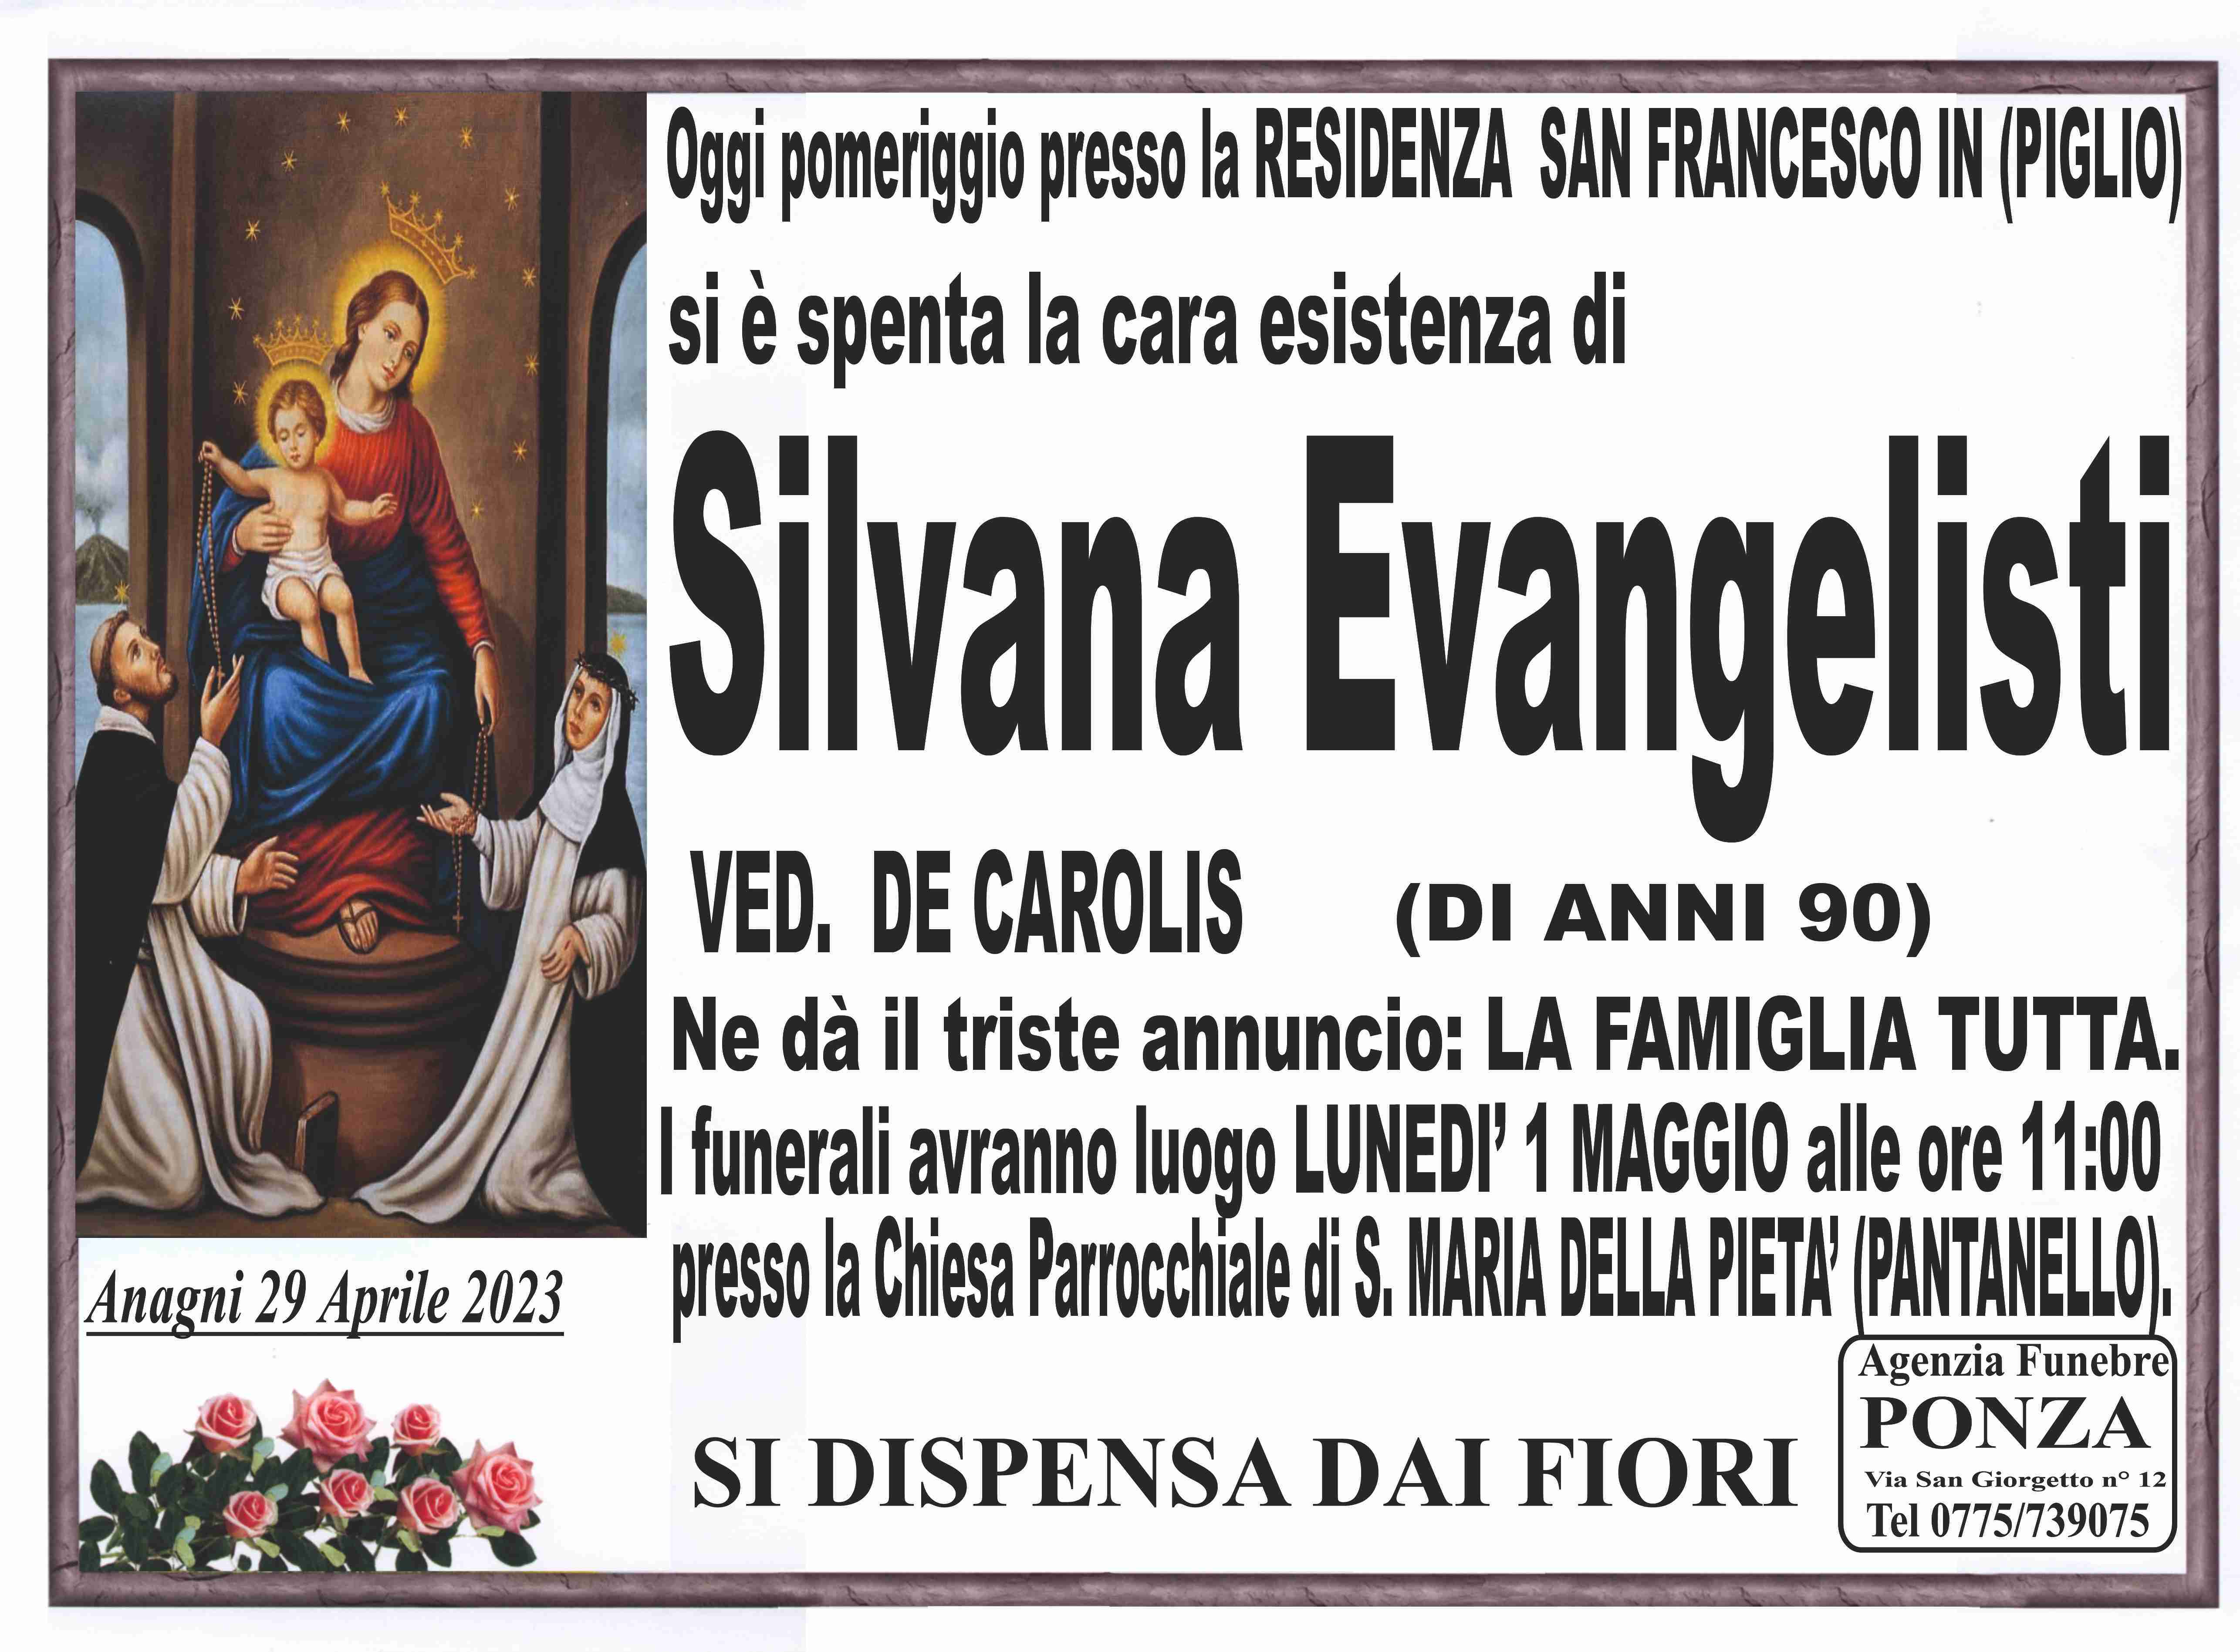 Silvana Evangelisti